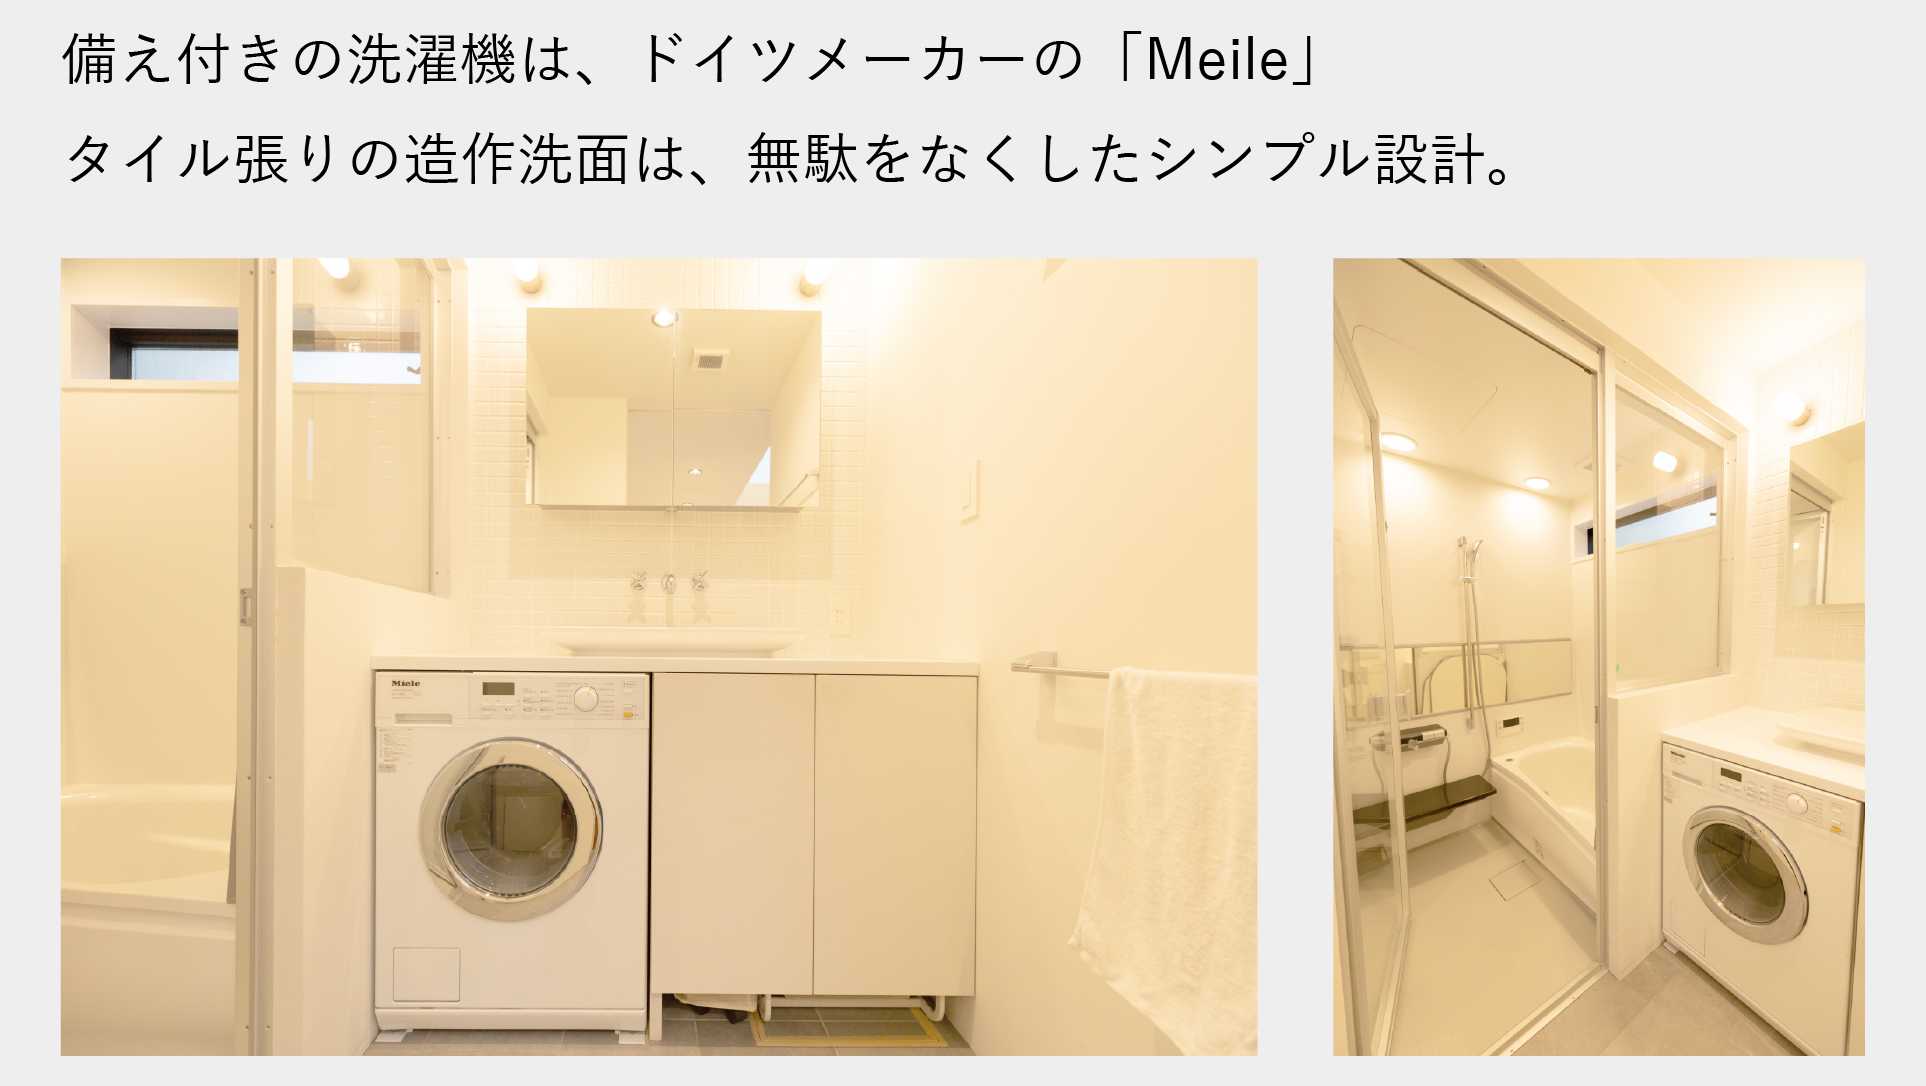 備え付き洗濯機は、ドイツメーカーの「Meile」 タイル張りの造作洗面は無駄をなくしたシンプル設計。